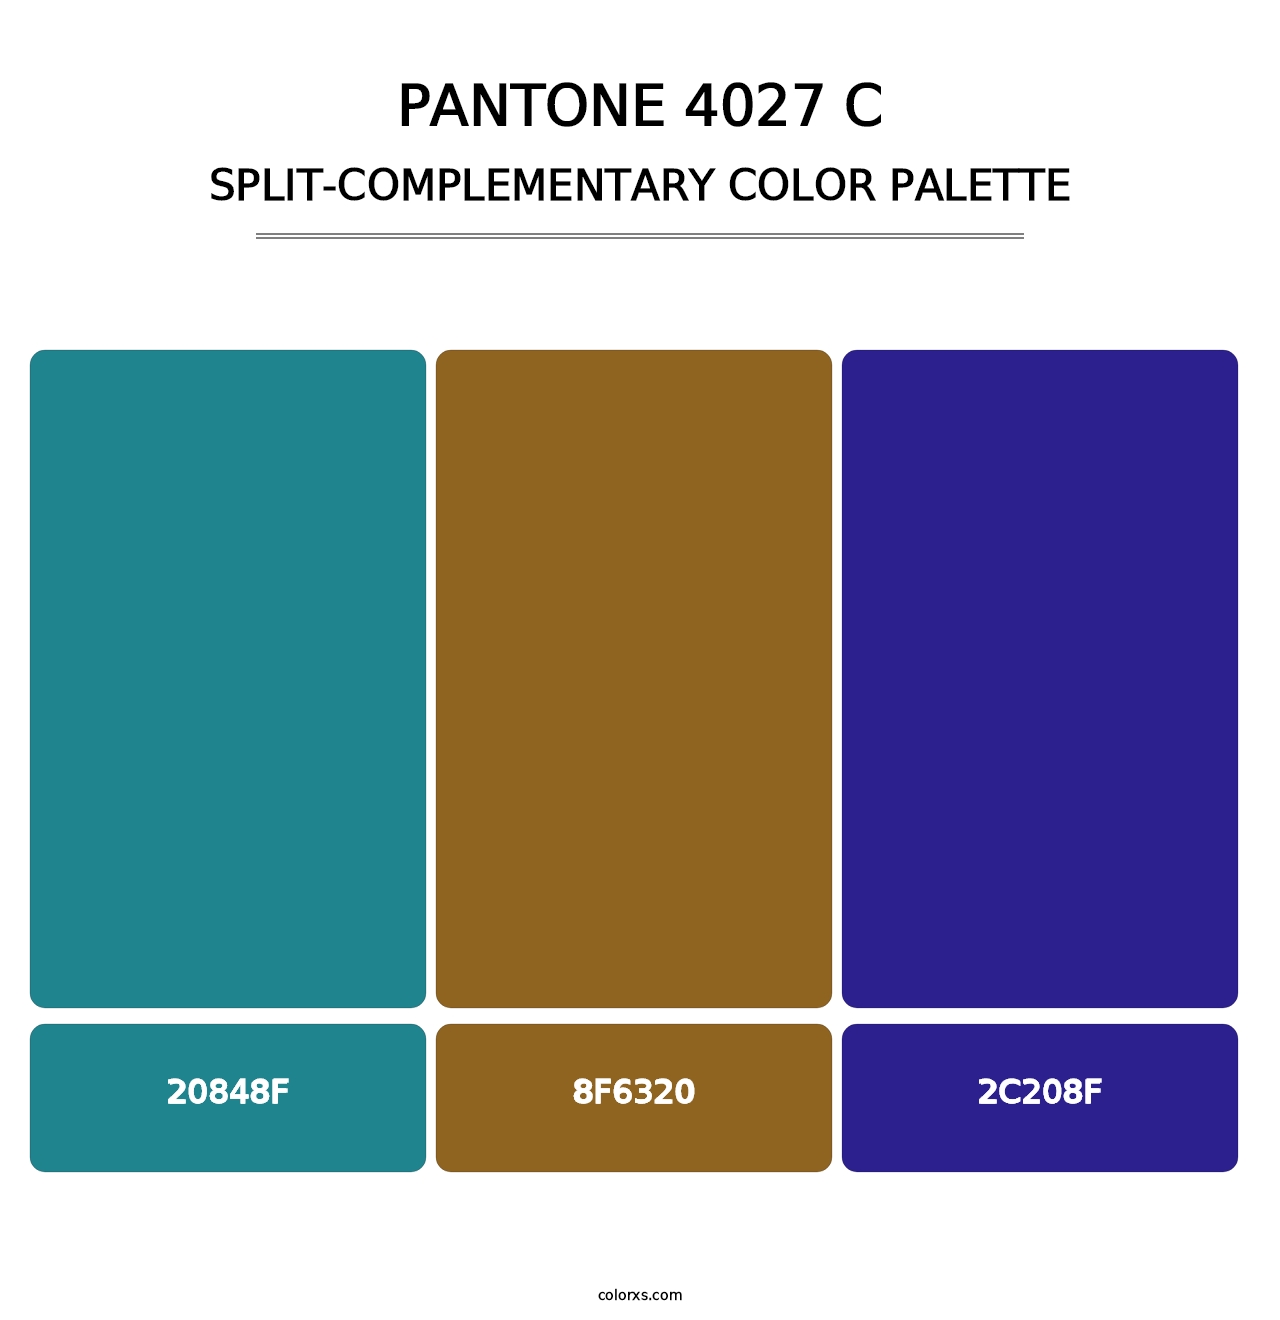 PANTONE 4027 C - Split-Complementary Color Palette